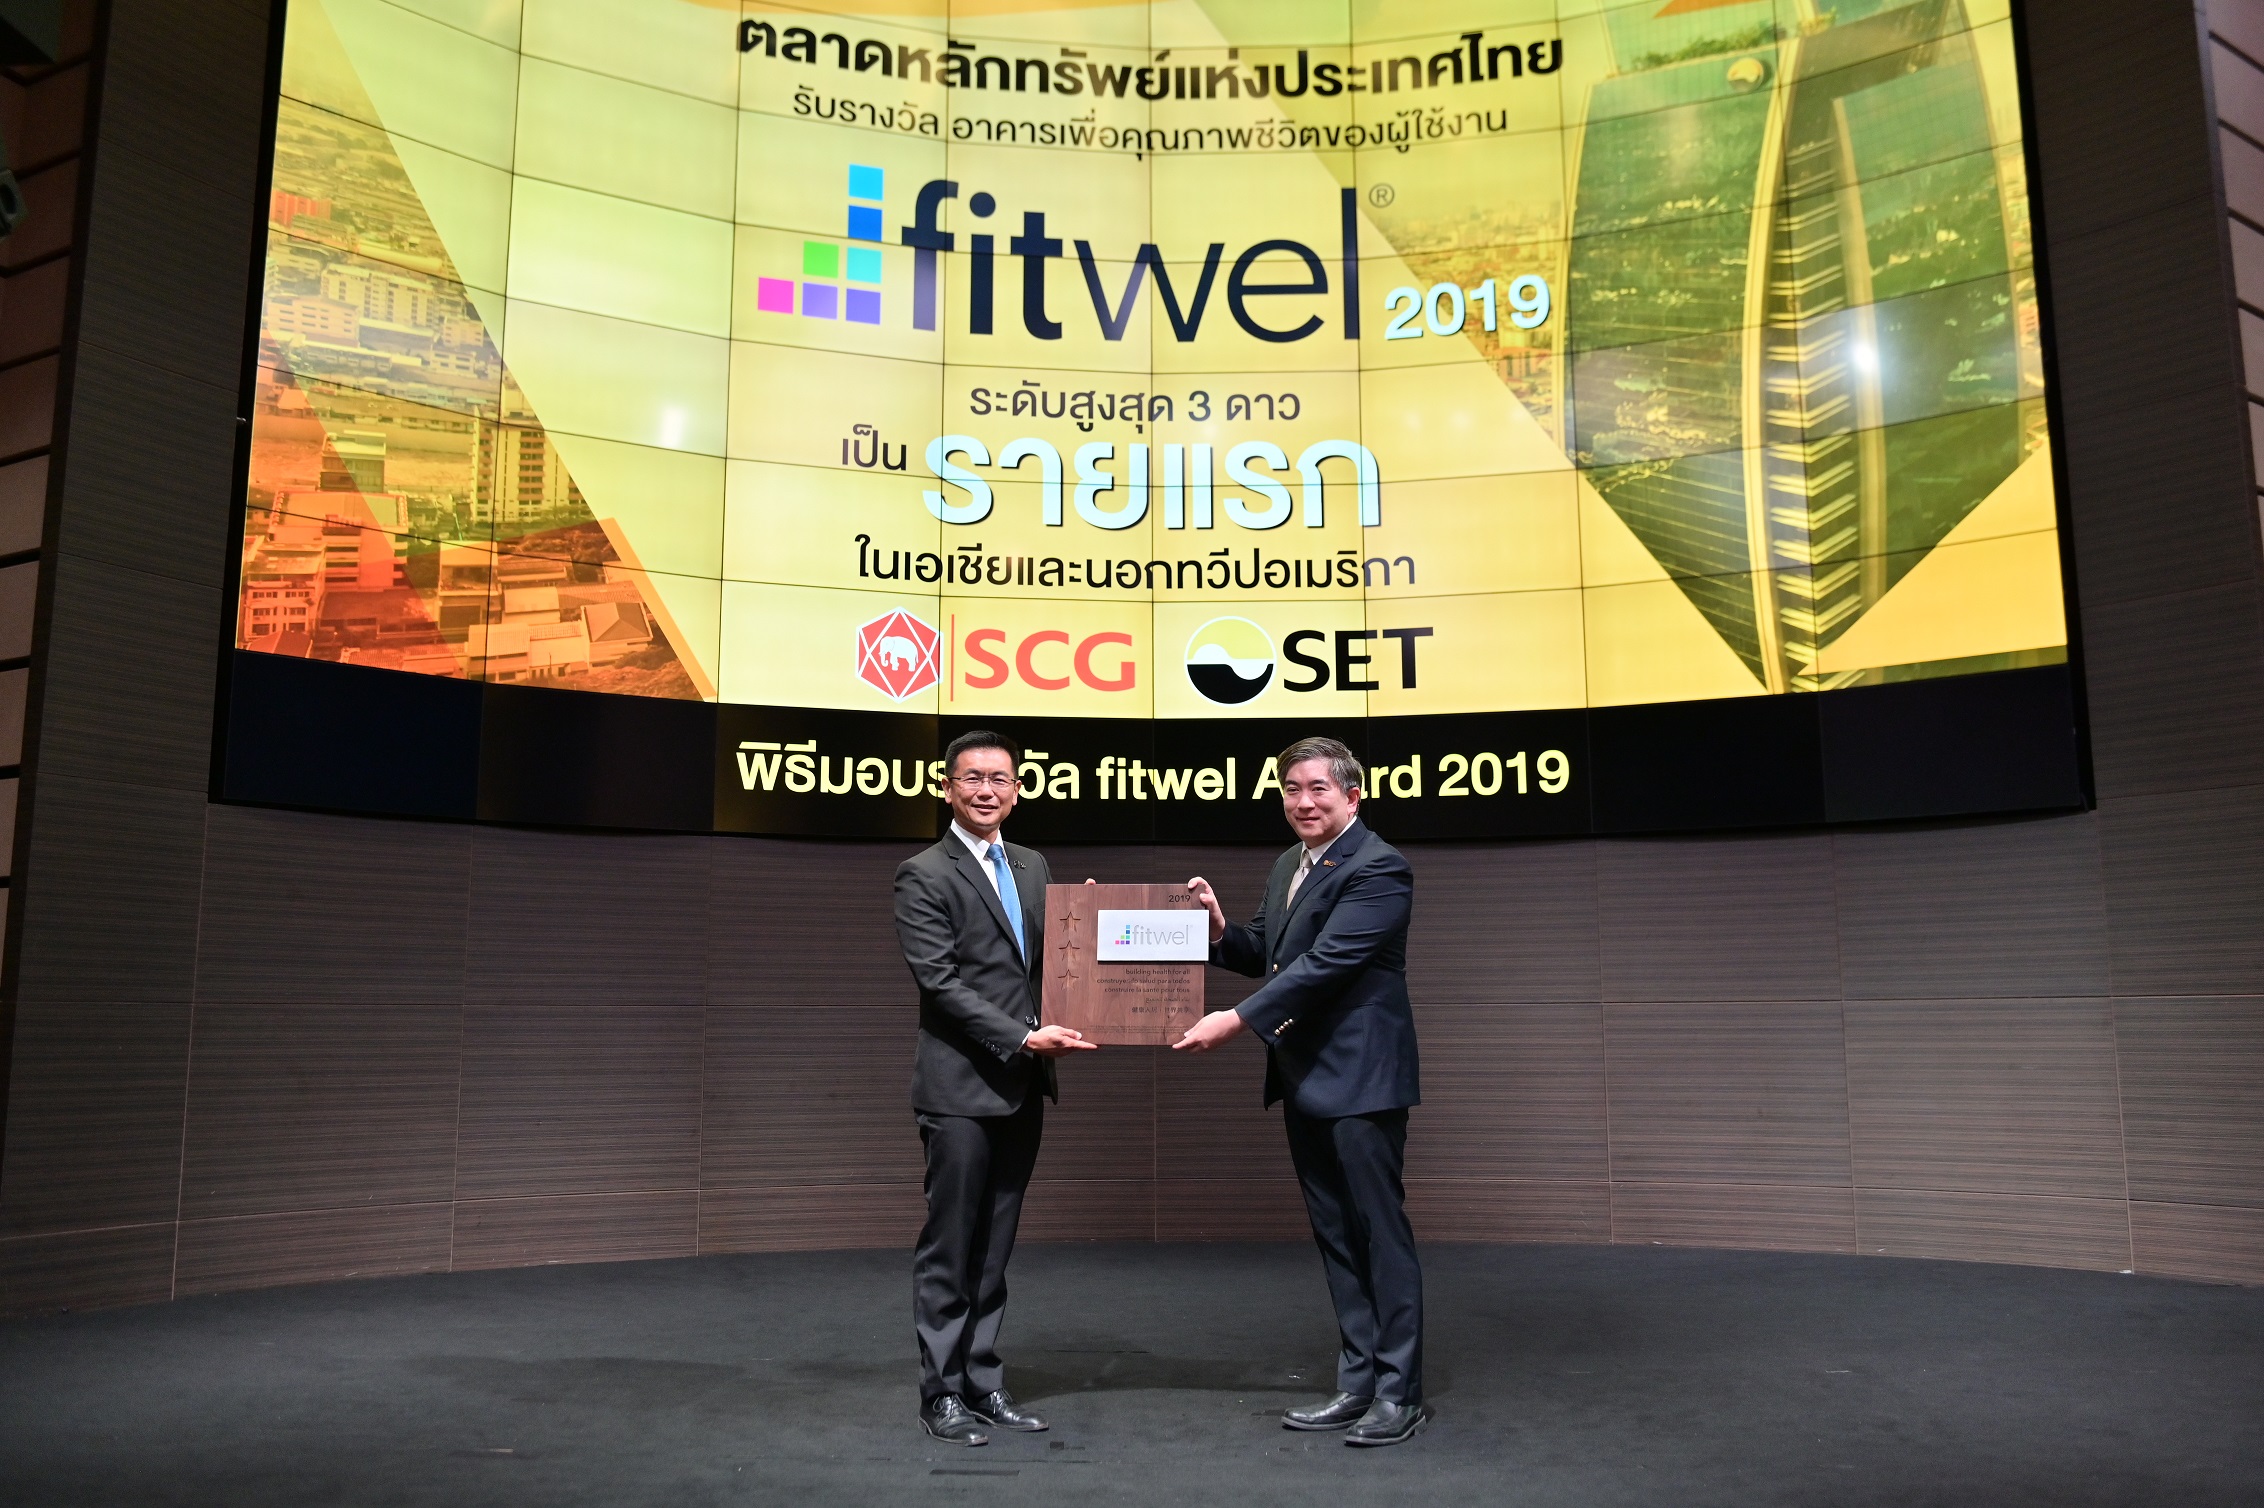 ตลาดหลักทรัพย์ฯ ได้รับรางวัล fitwel Award ระดับ 3 ดาว